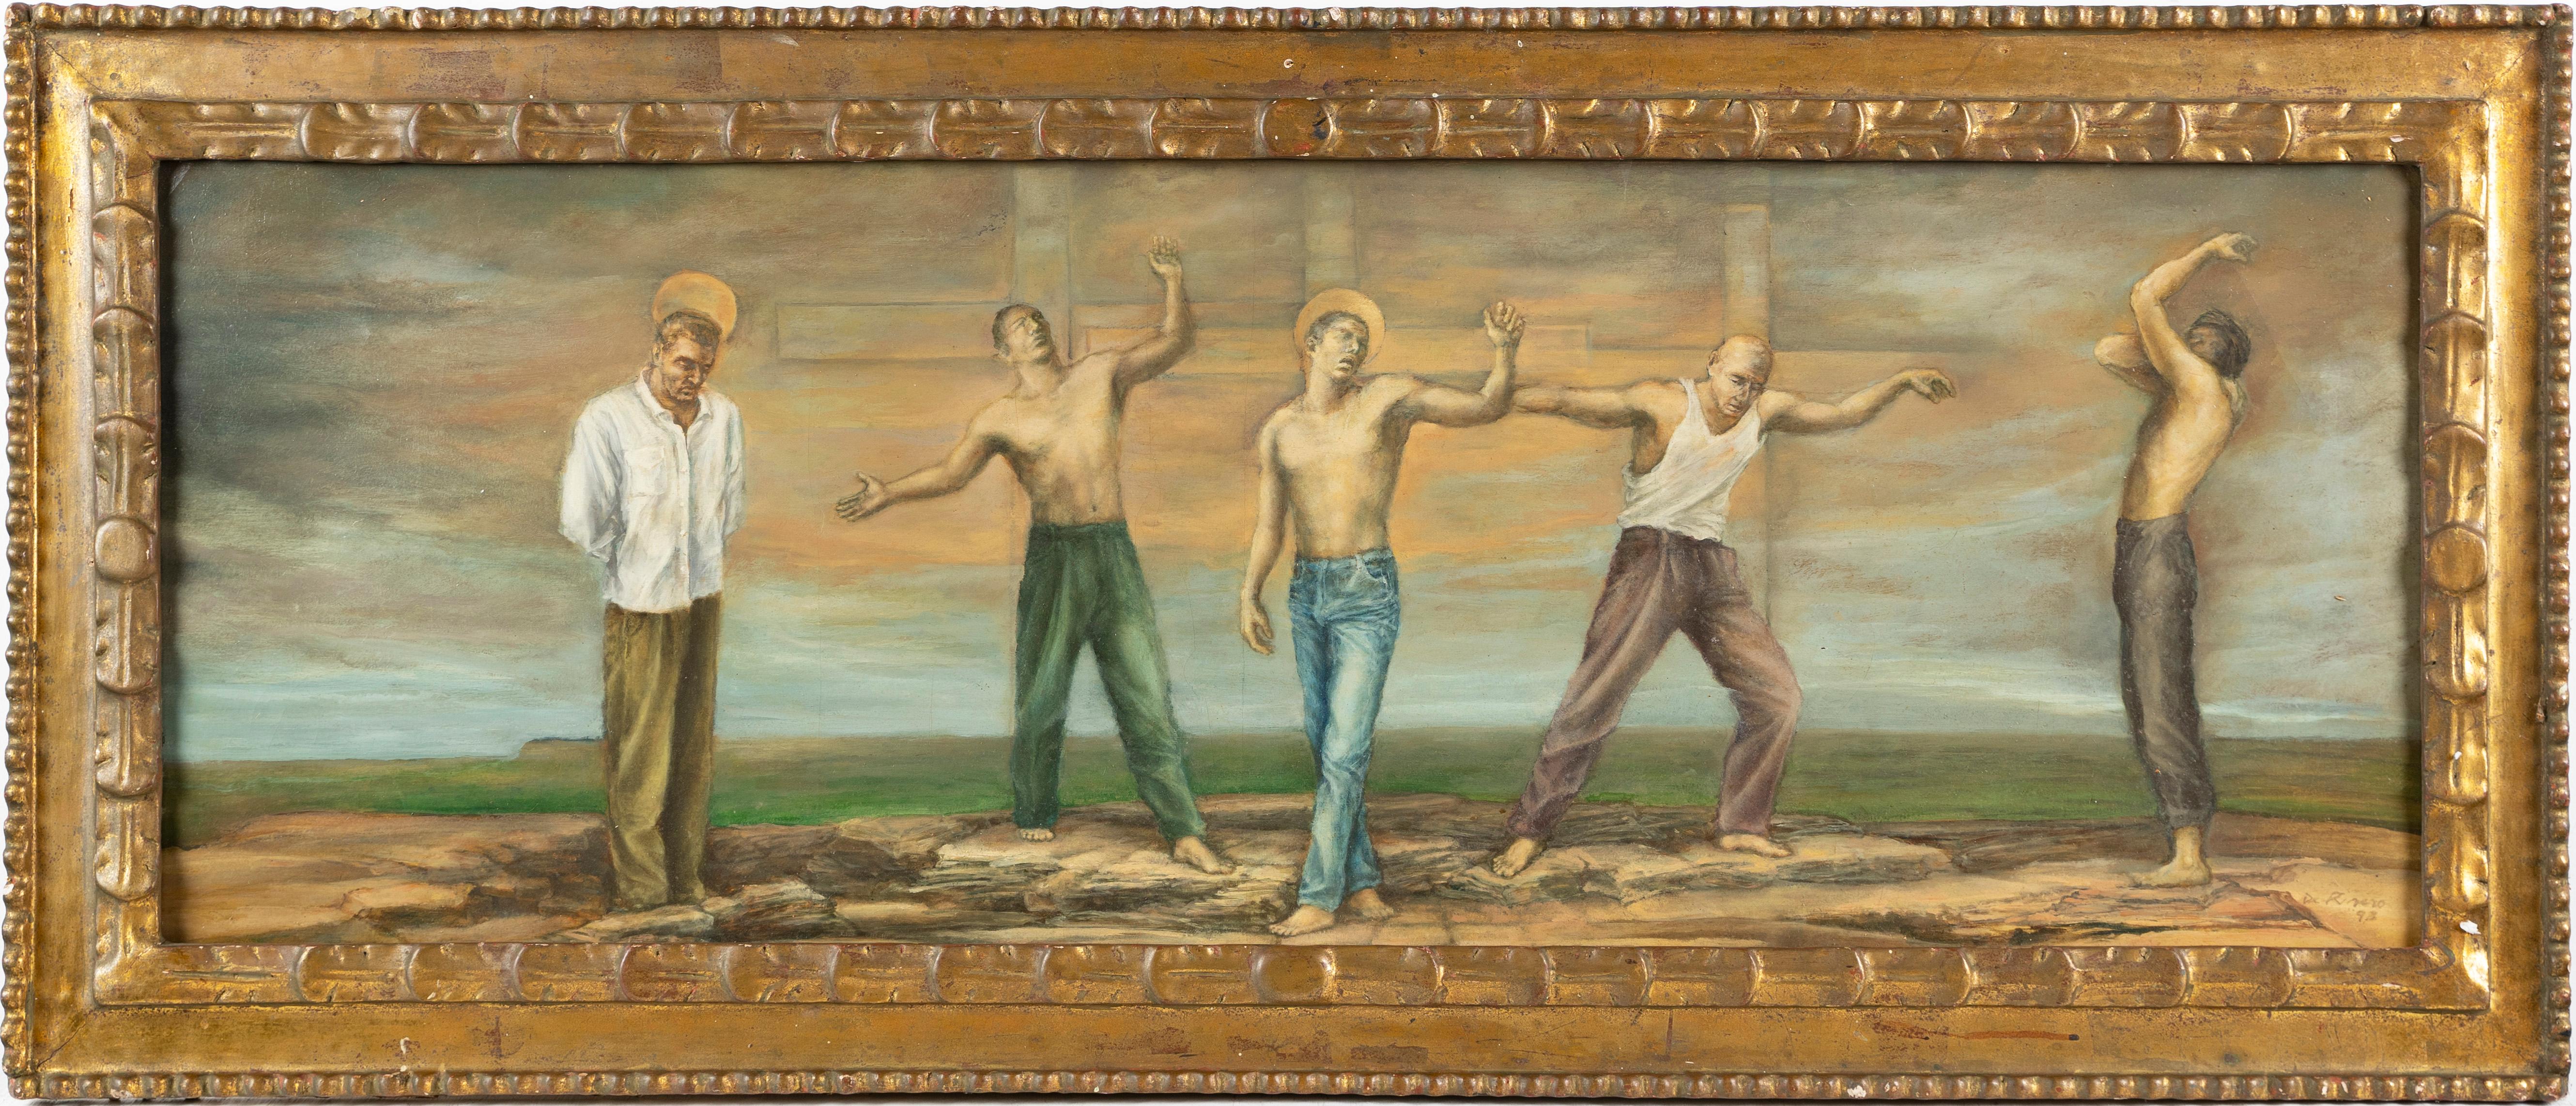 Unknown Landscape Painting – Großes signiertes surreales nacktes männliches Porträt, symbolistische Landschaft, gerahmtes Ölgemälde